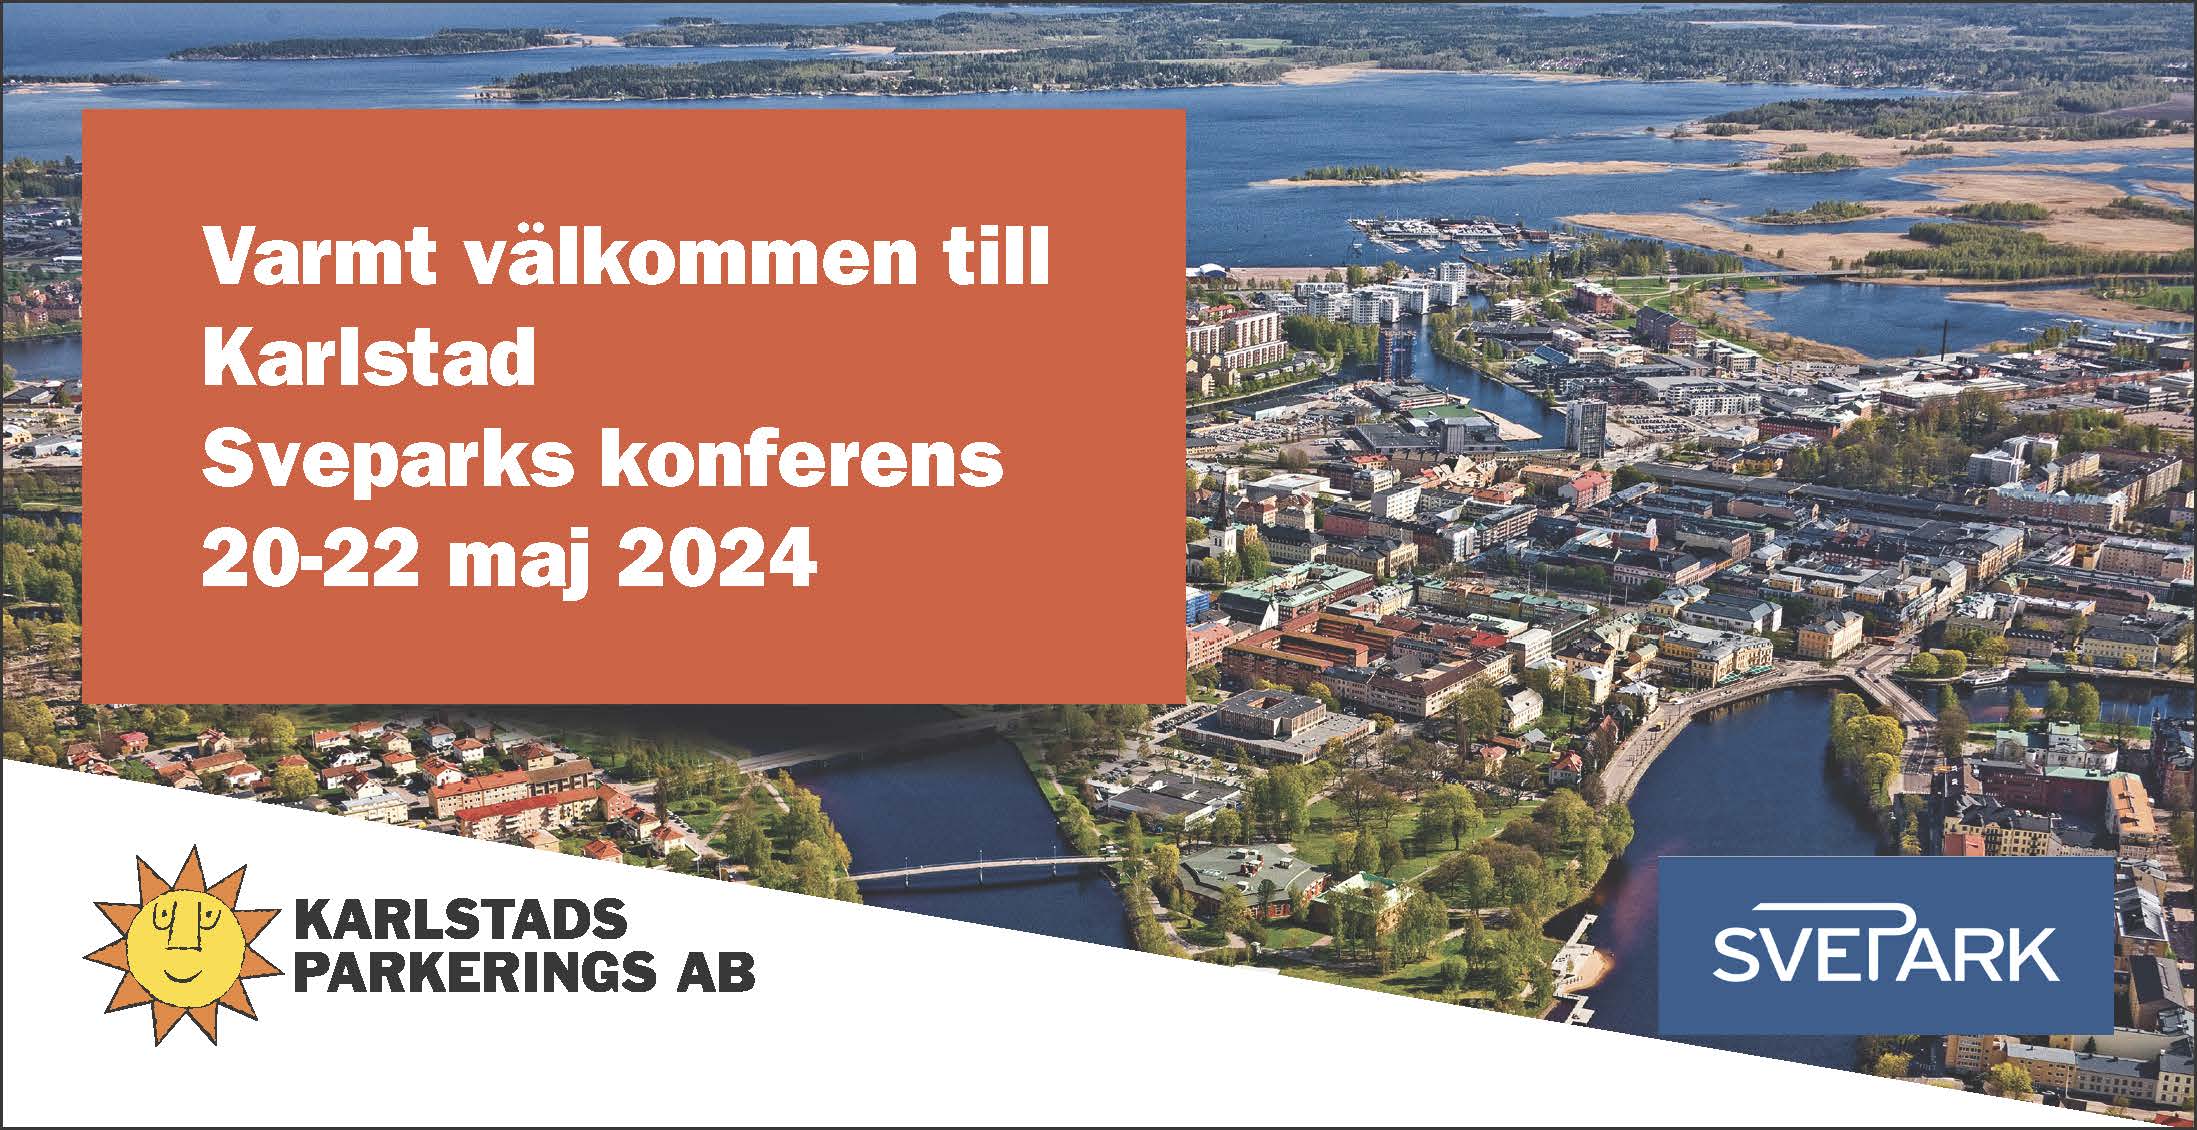 Varmt välkommen till KarlstadSveparks konferens 10-22 maj 2024